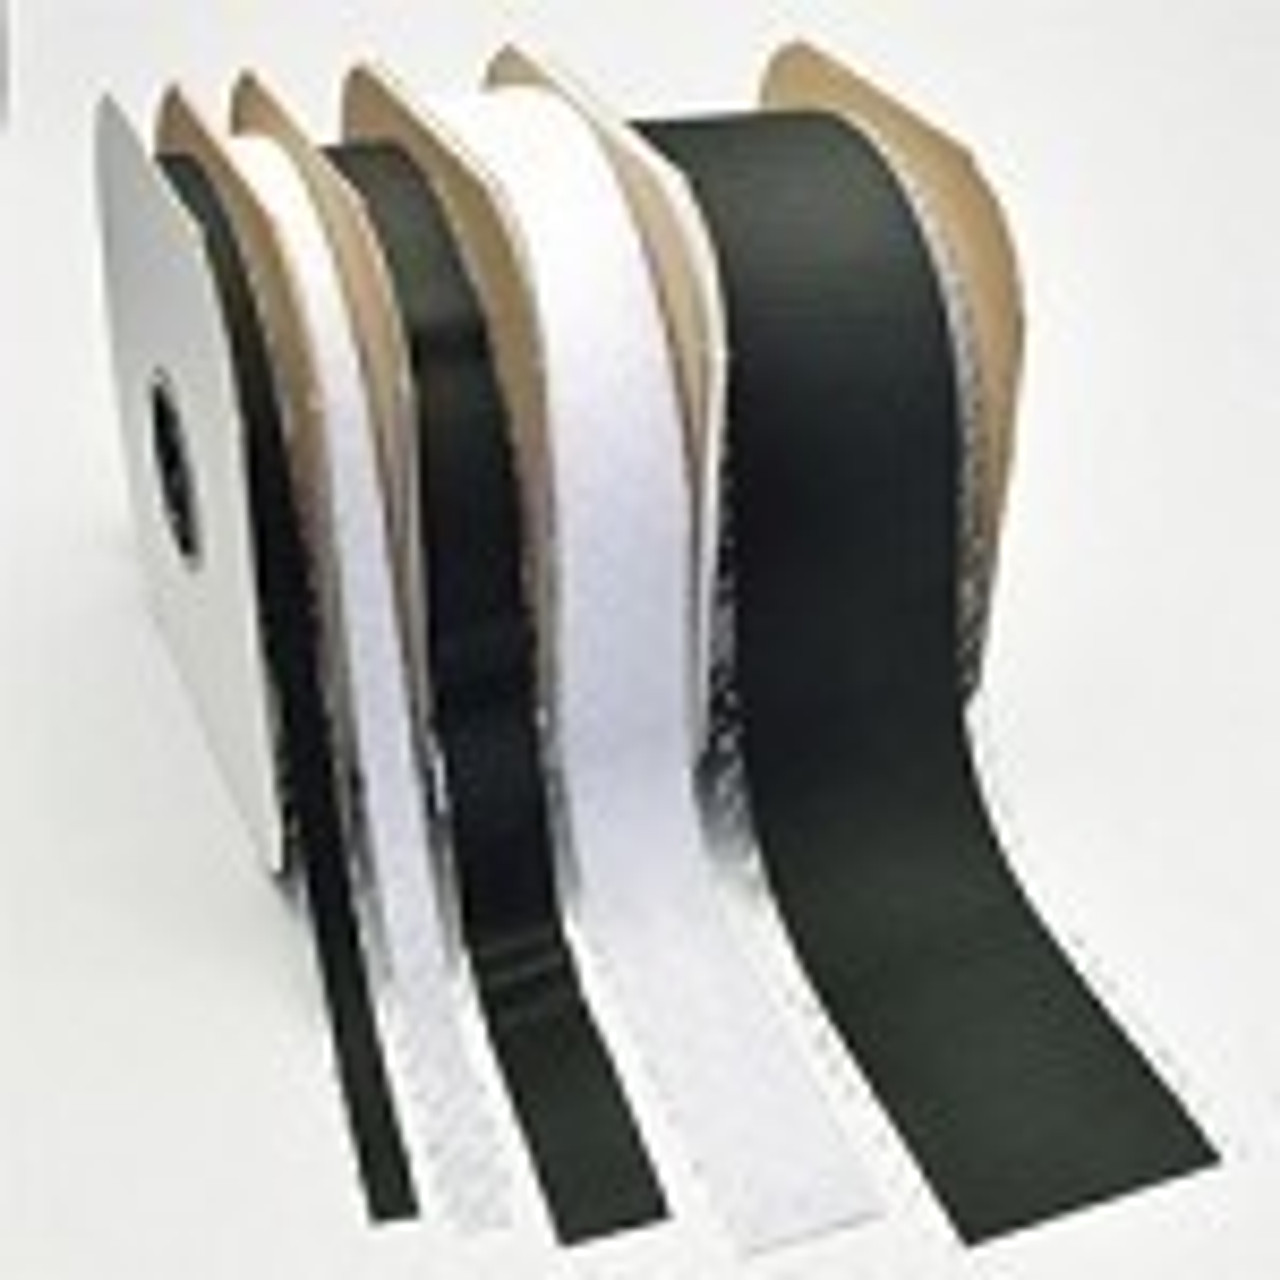 Industrial Strength VELCRO® Brand Tape Hook & Loop Packages